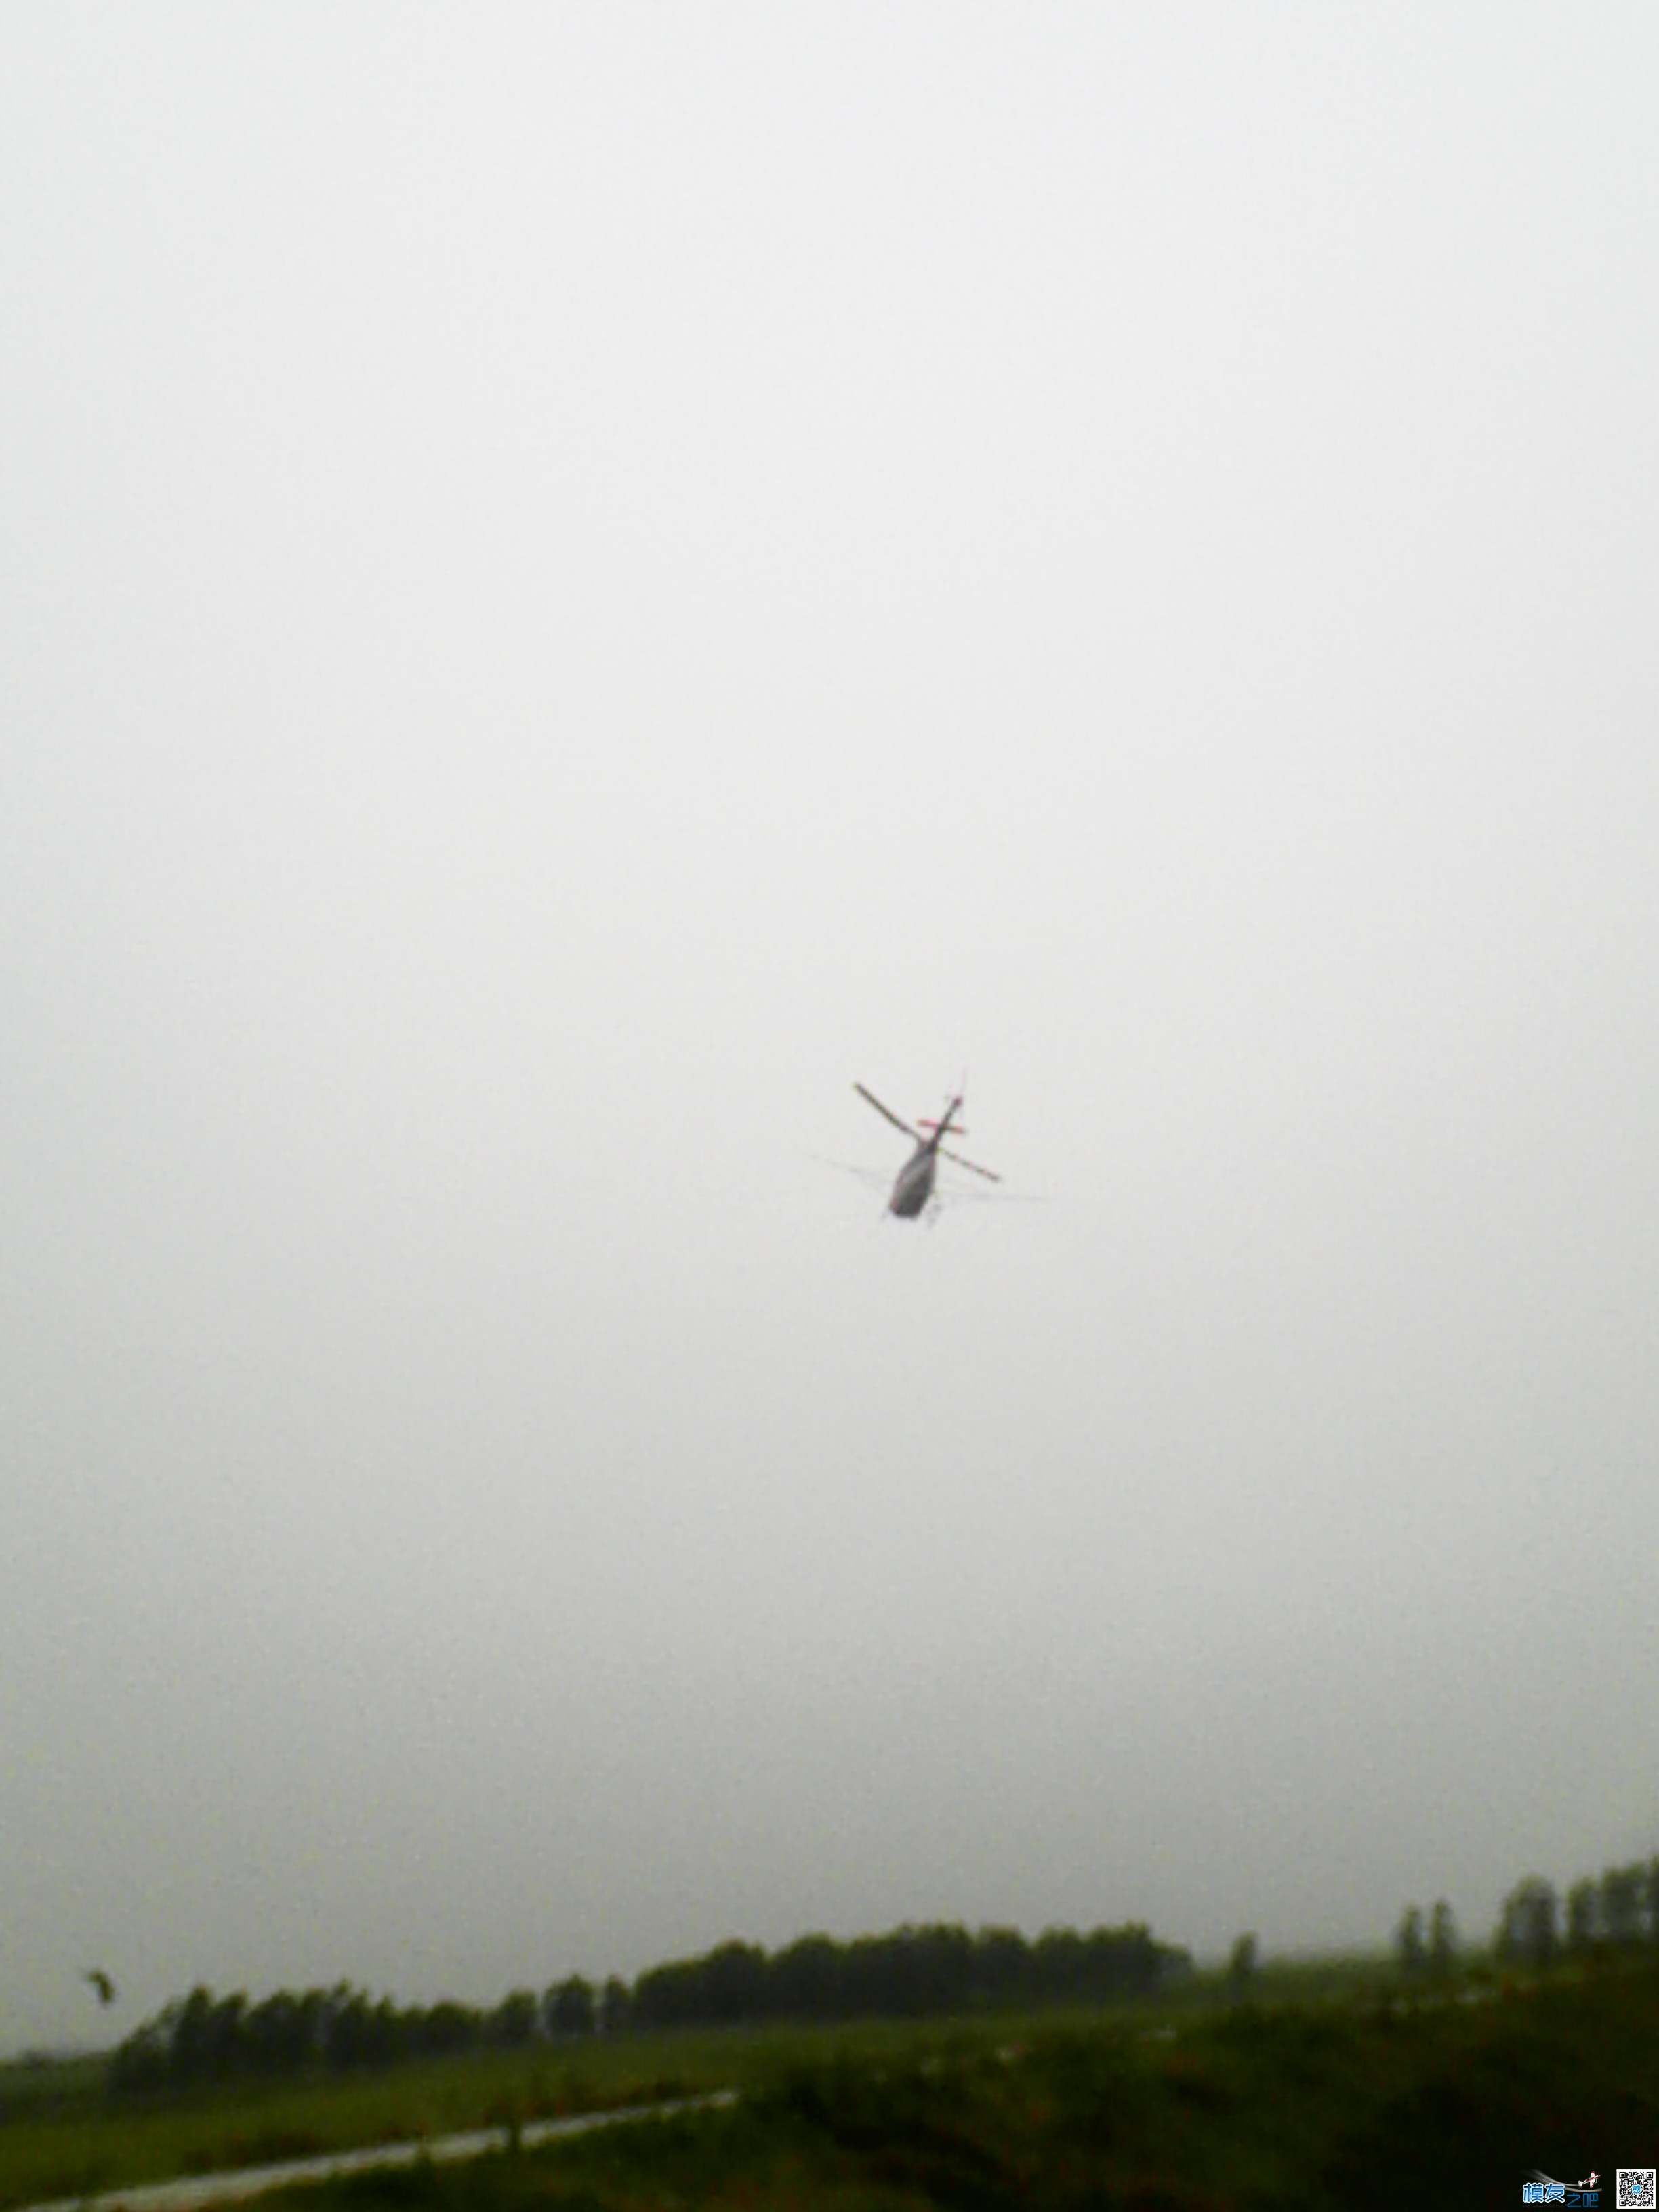 打药的小直升机 直升机,看见了,24k,不清晰,螺旋桨 作者:24k纯帅 1789 